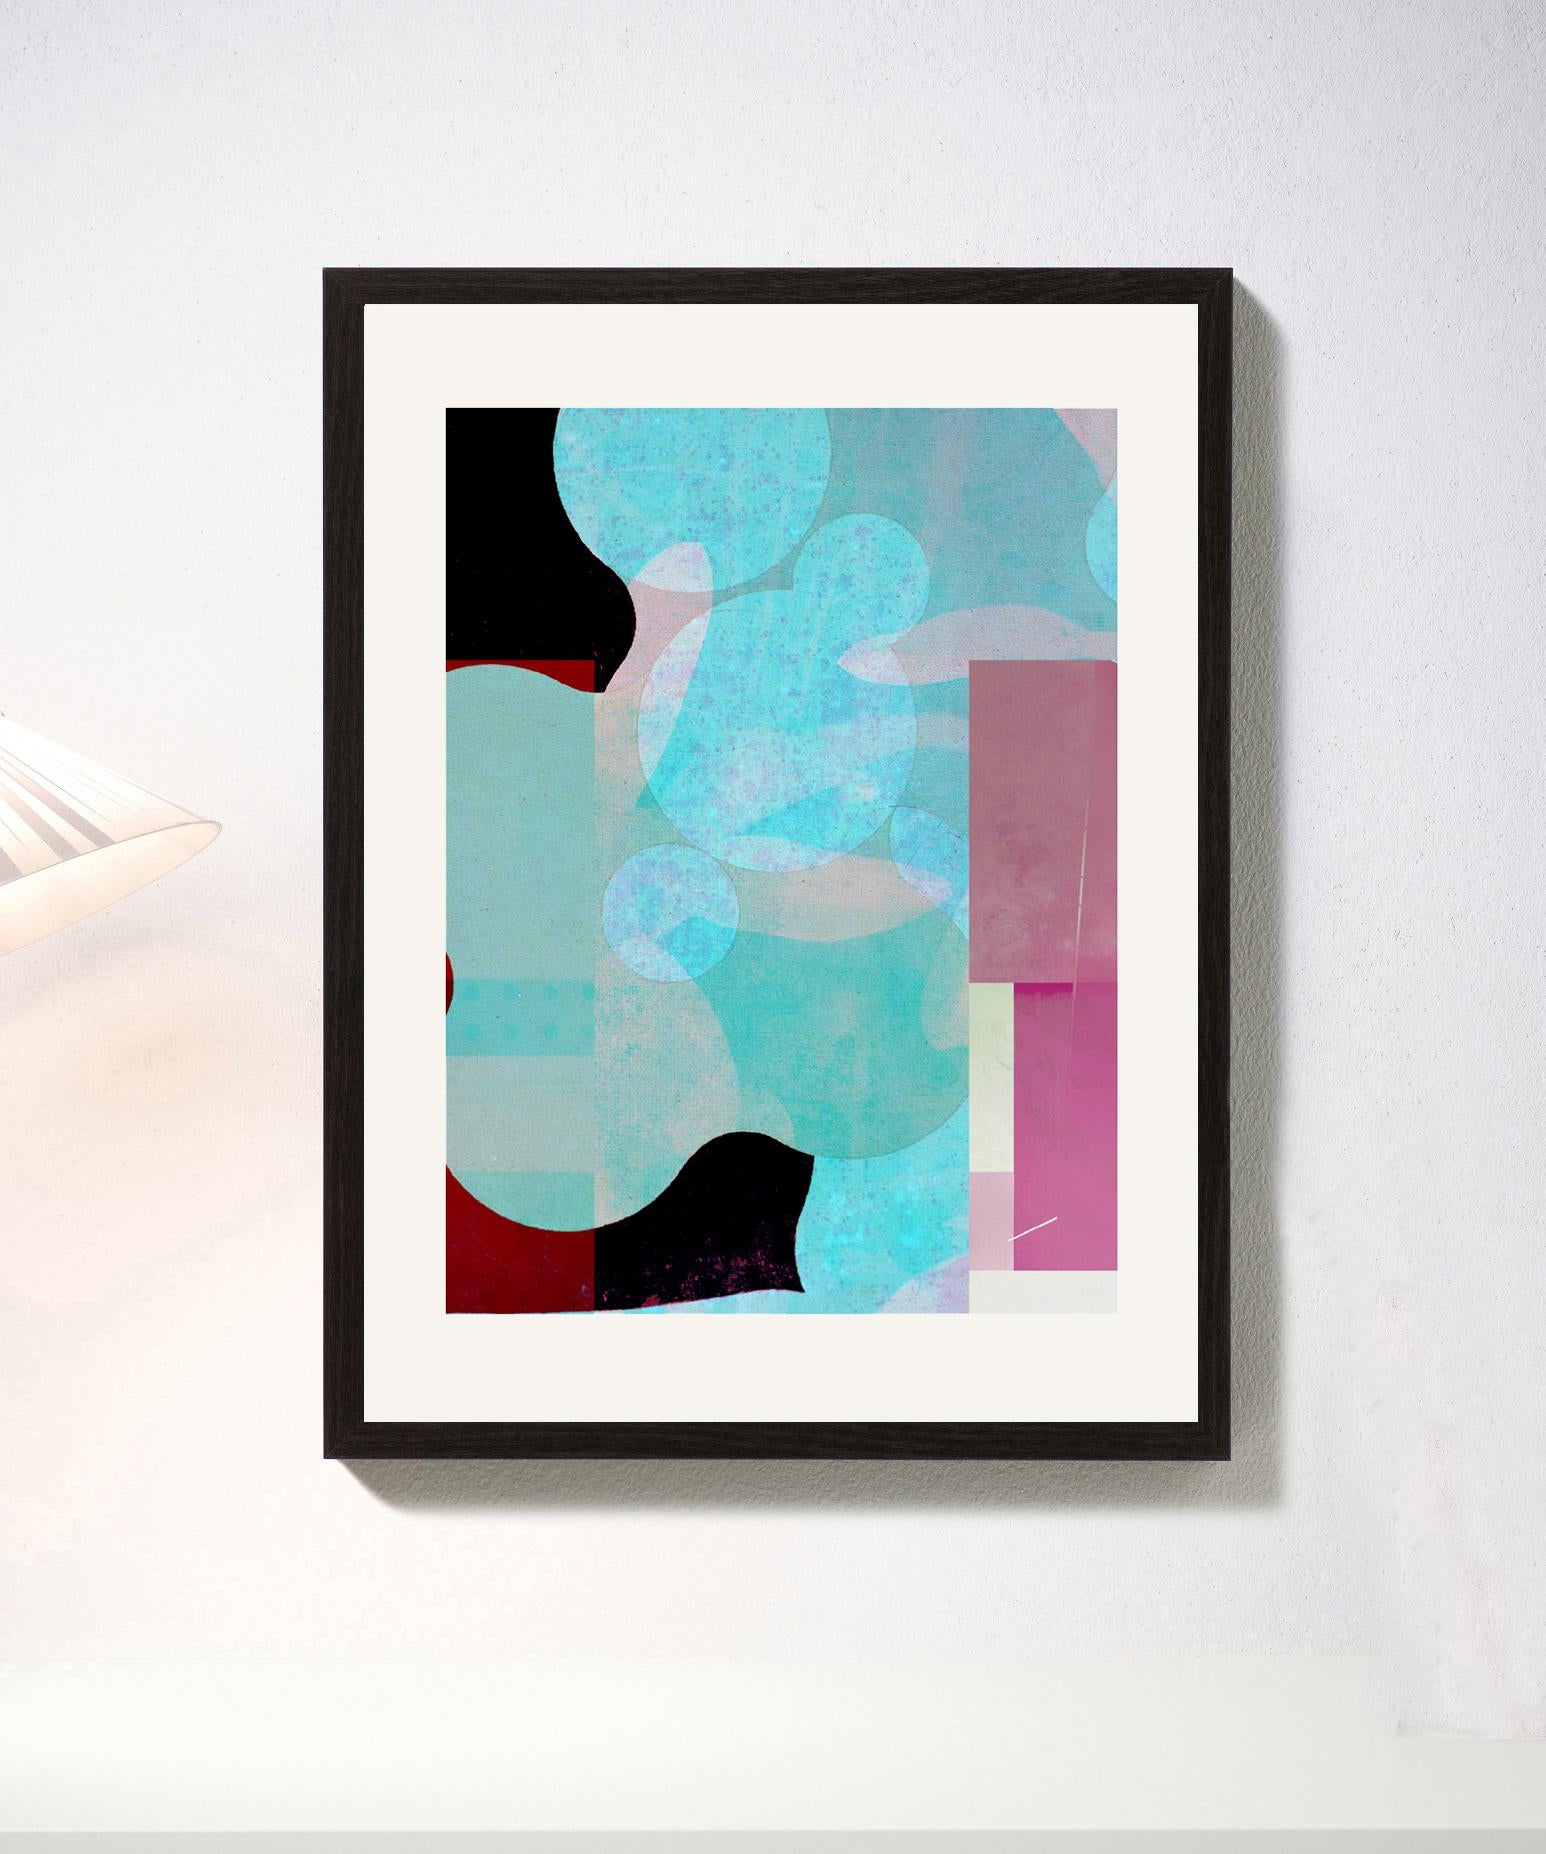 Blau & Rosa - Zeitgenössisch, Abstrakt, Expressionismus, Moderne, Pop Art, Geometrisch – Print von Francisco Nicolás